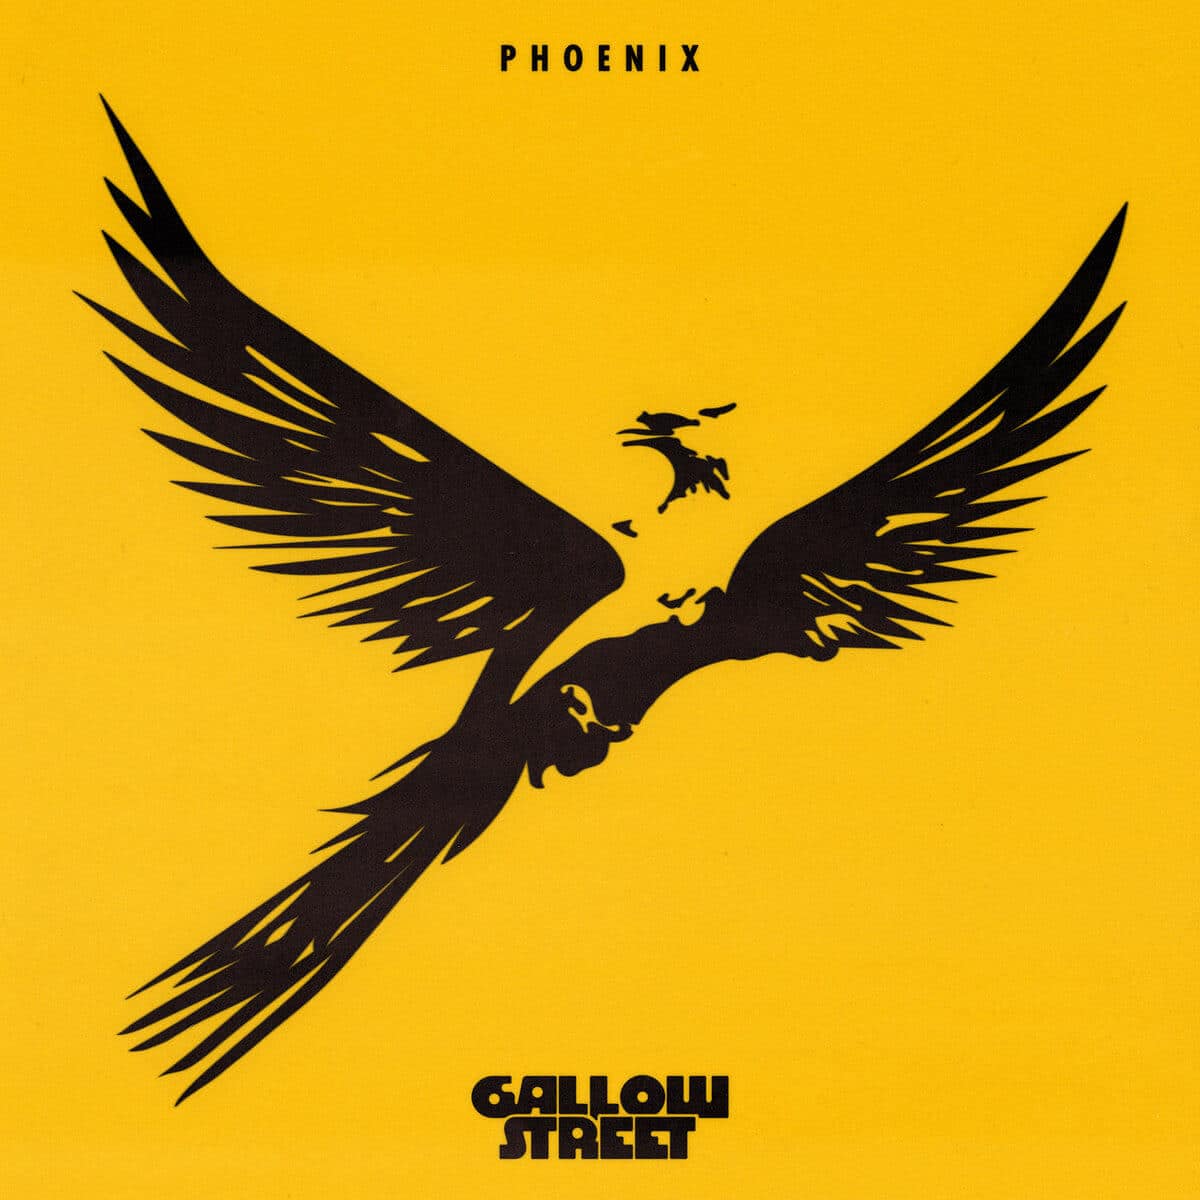 Gallowstreet – Phoenix